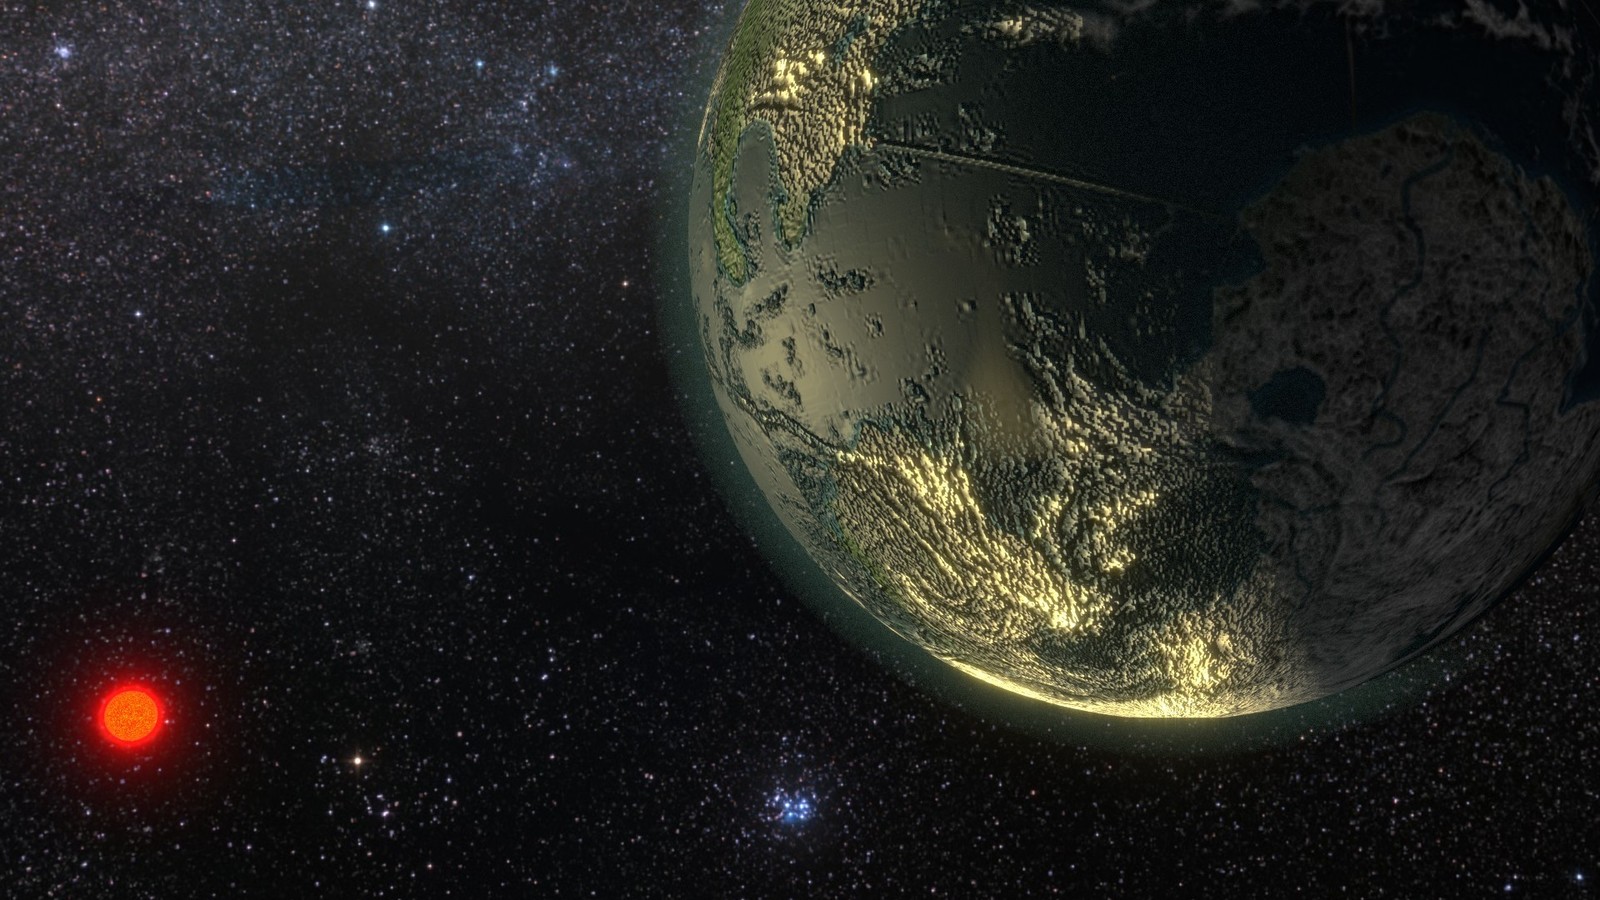 Dlaczego obserwujemy tak mało planet 1,5-2 razy większych od Ziemi?
